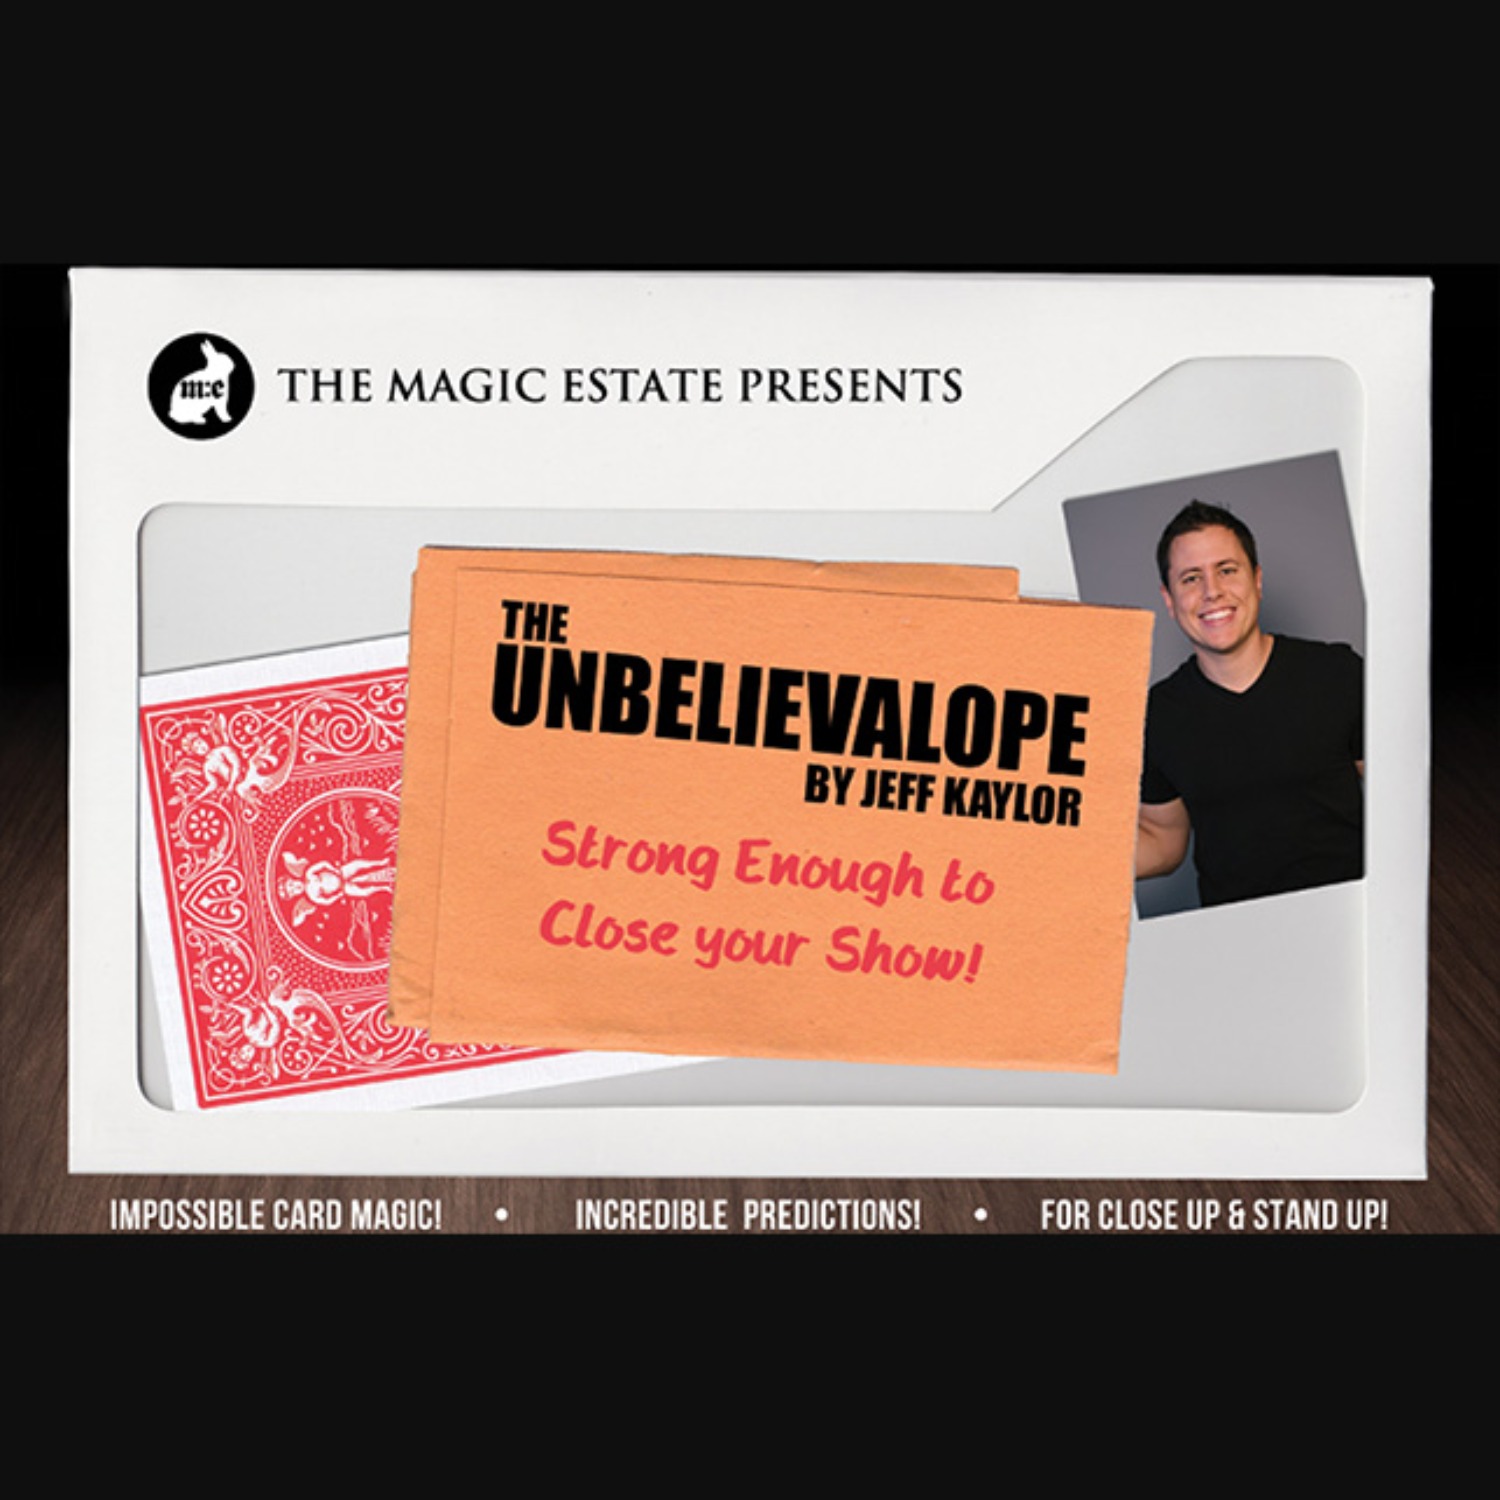 [언빌리벌로프] Unbelievalope by Jeff Kaylor 무작위 관객에게 질문을 하고 답변을 한 것이 미리 예언되어 있는 봉투입니다. 인상적인 팔러마술!!